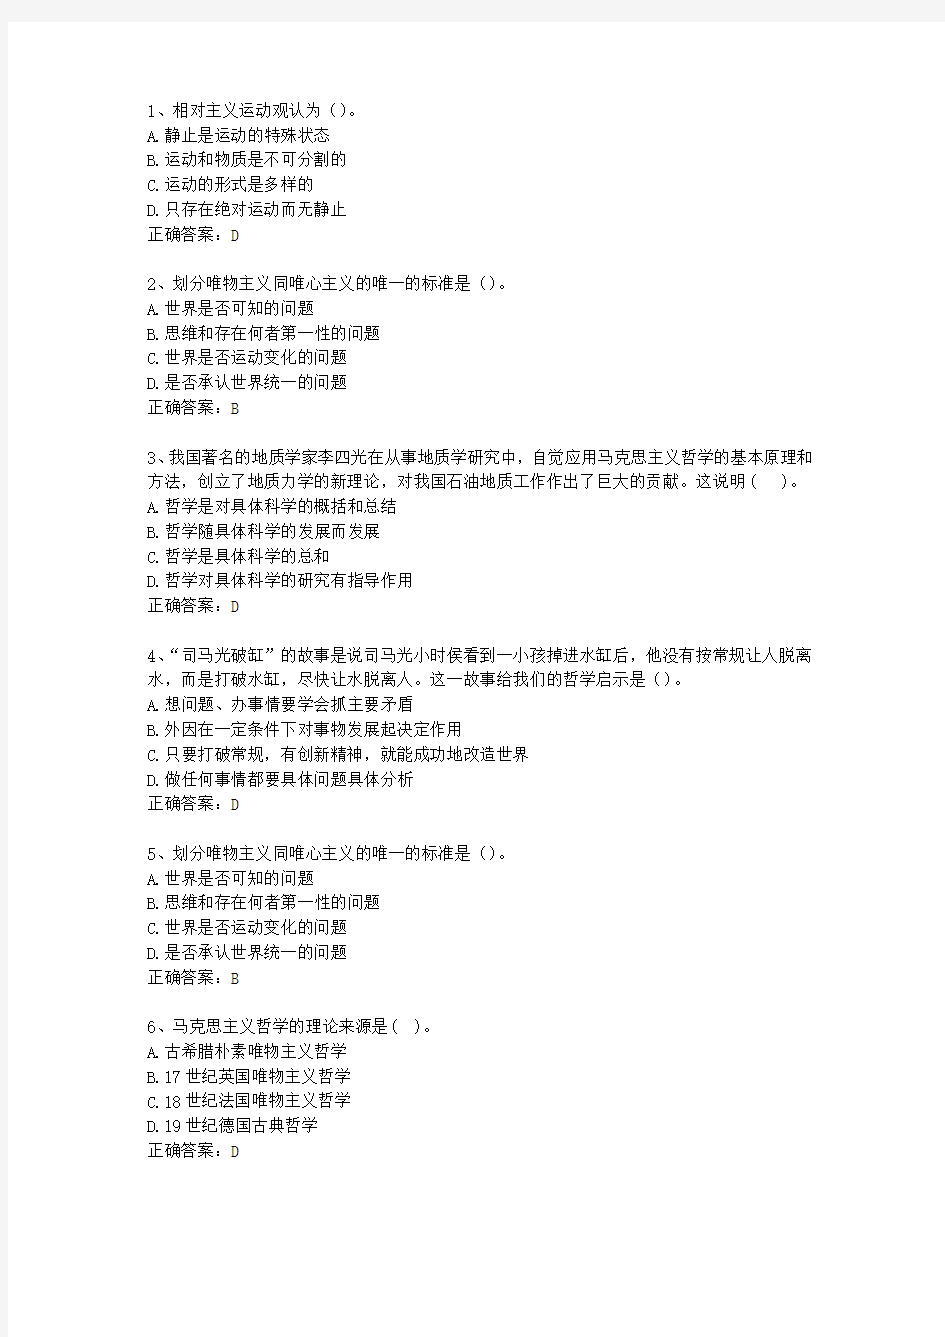 2013四川省教师招聘考试公共基础知识(必备资料)